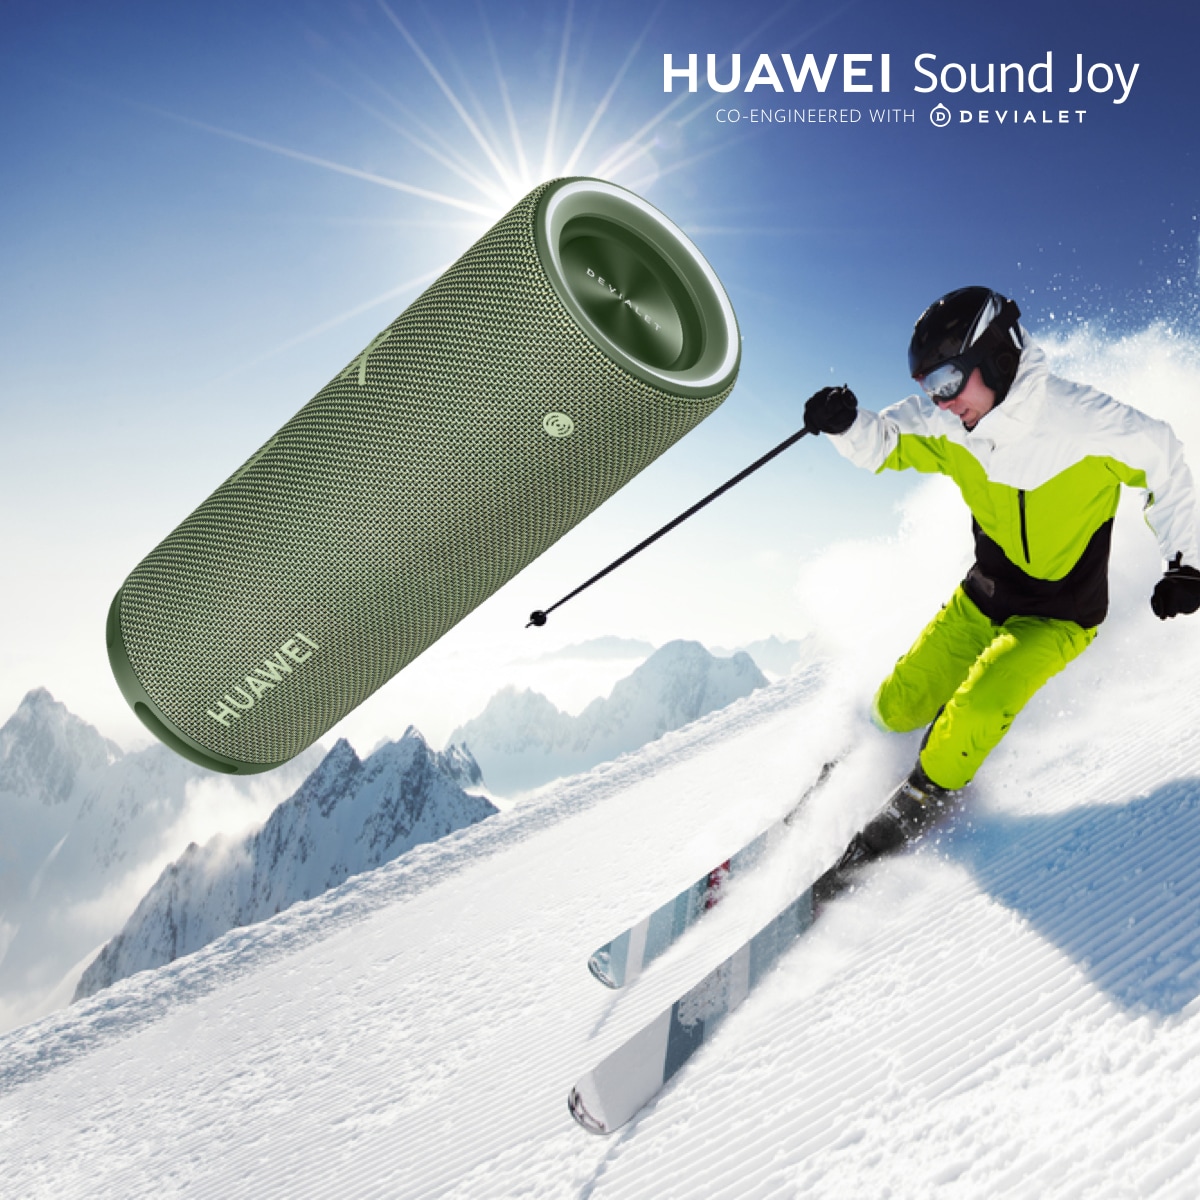 HUAWEI Sound Joy redefinește experiența audio a utilizatorilor